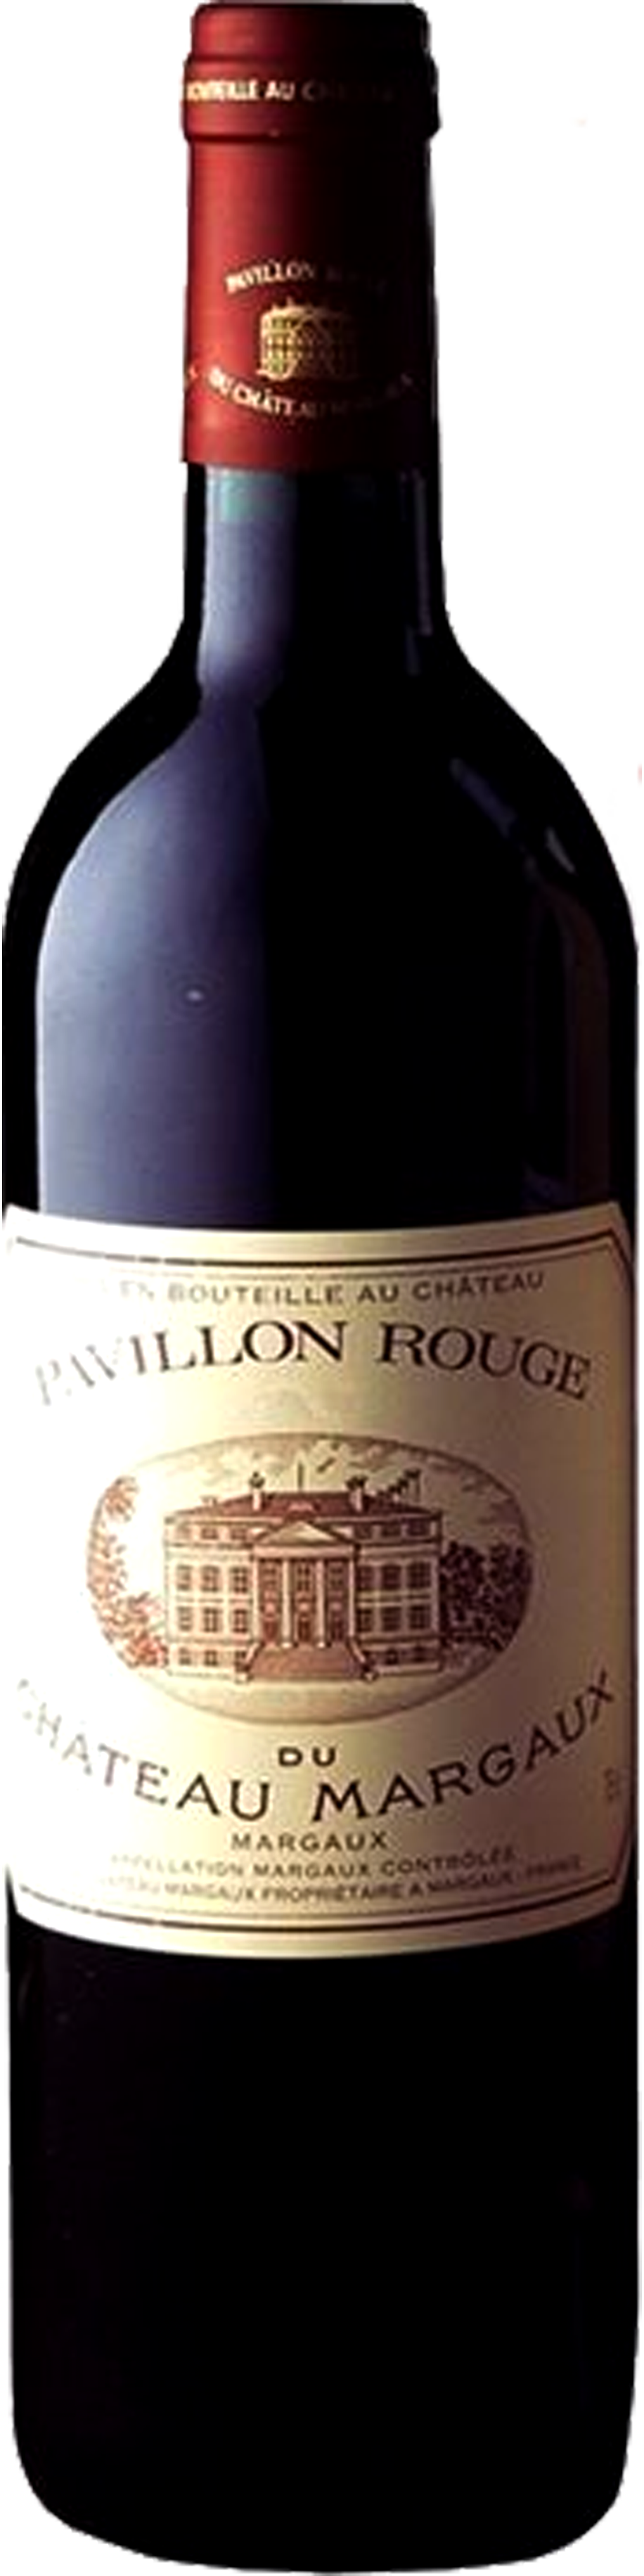 Bottle shot of 2006 Pavillon Rouge du Château Margaux